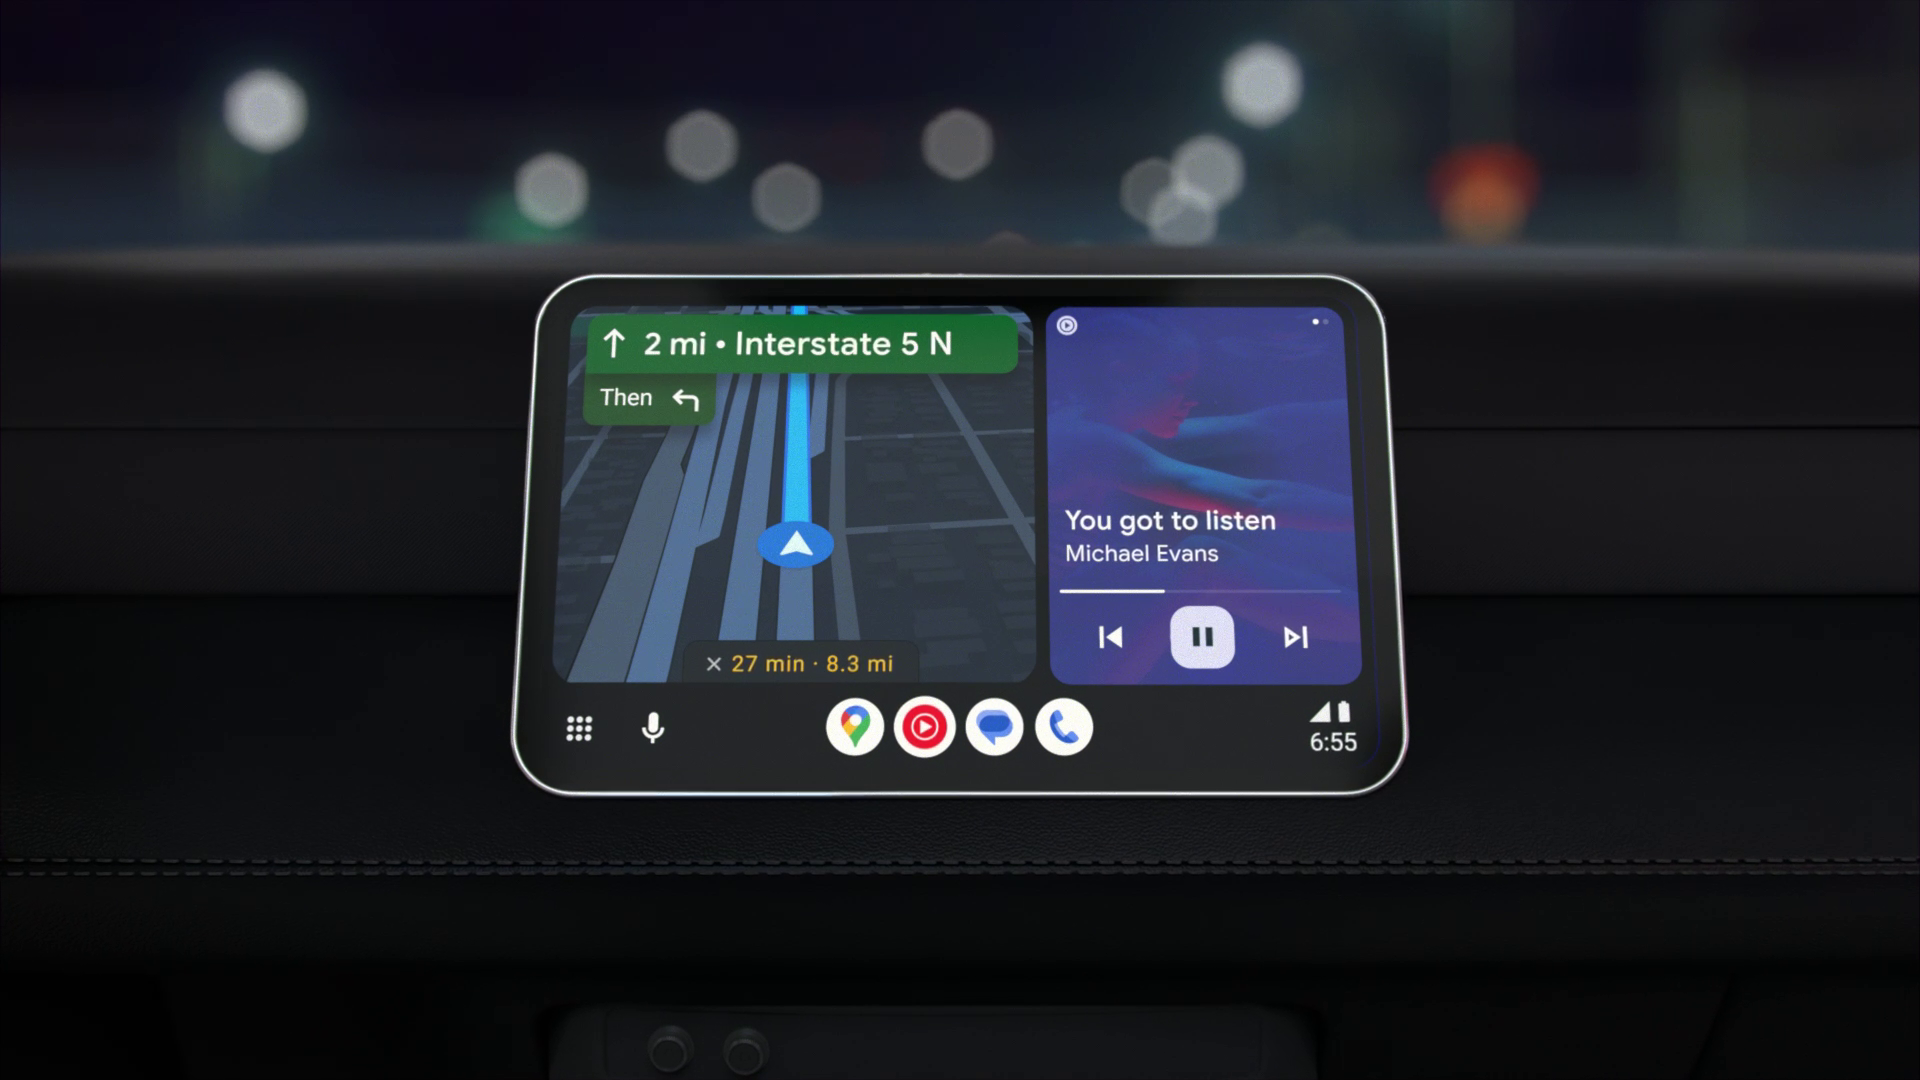 Desain ulang terbaru Android Auto, dengan peta di sebelah kiri dan musik di sebelah kanan.